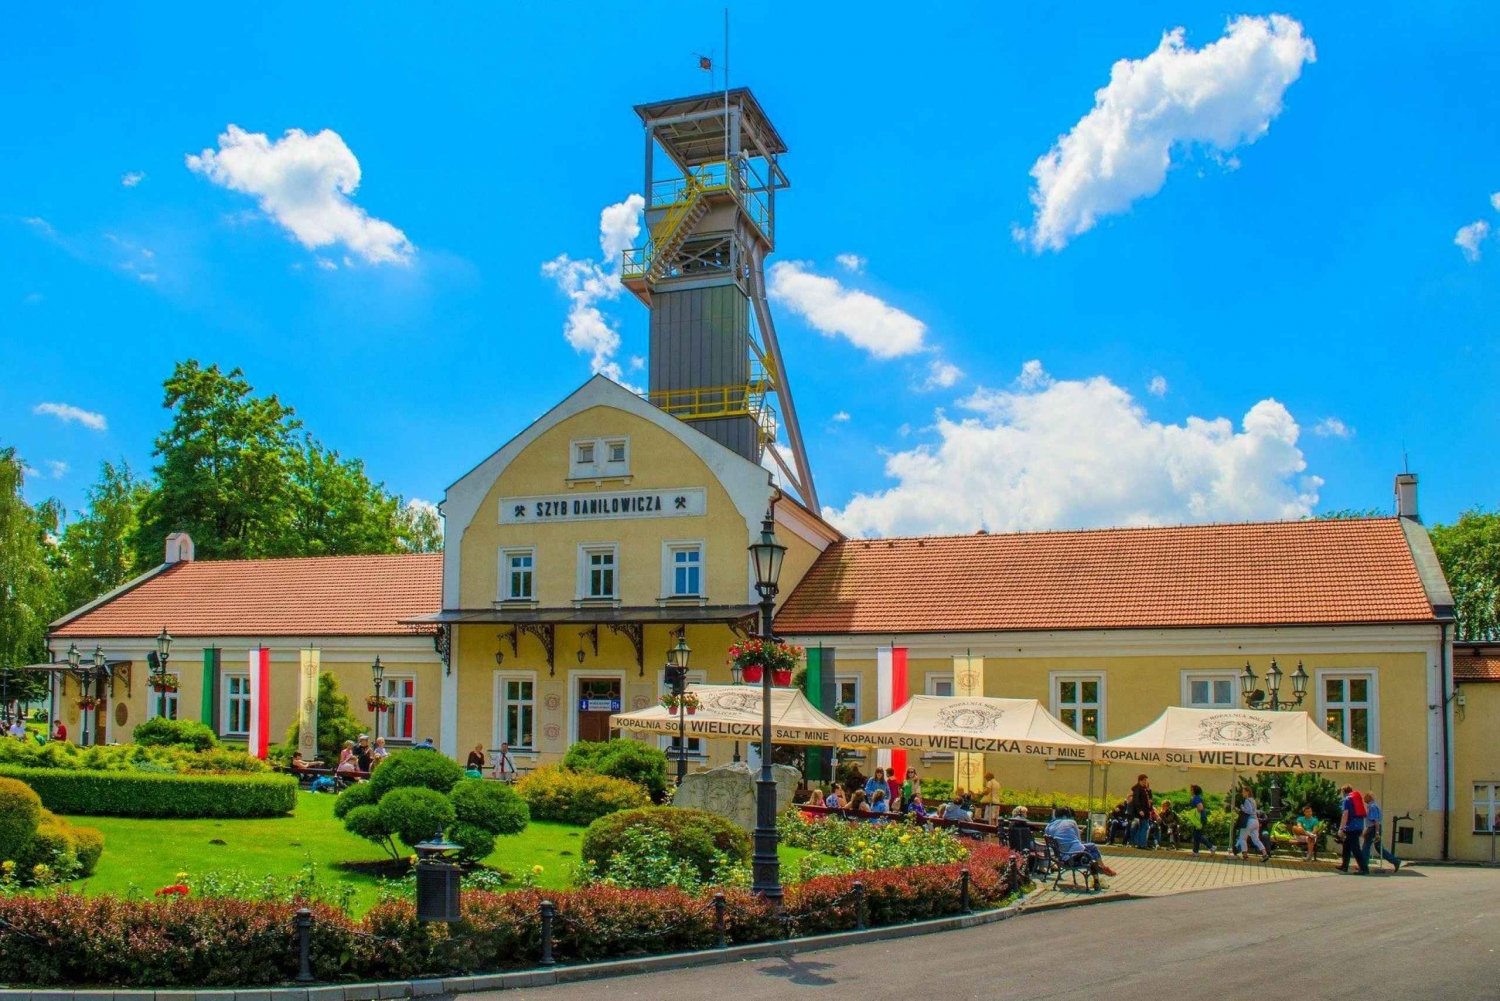 Mina de sal de Wieliczka: Ingresso sem fila e visita guiada